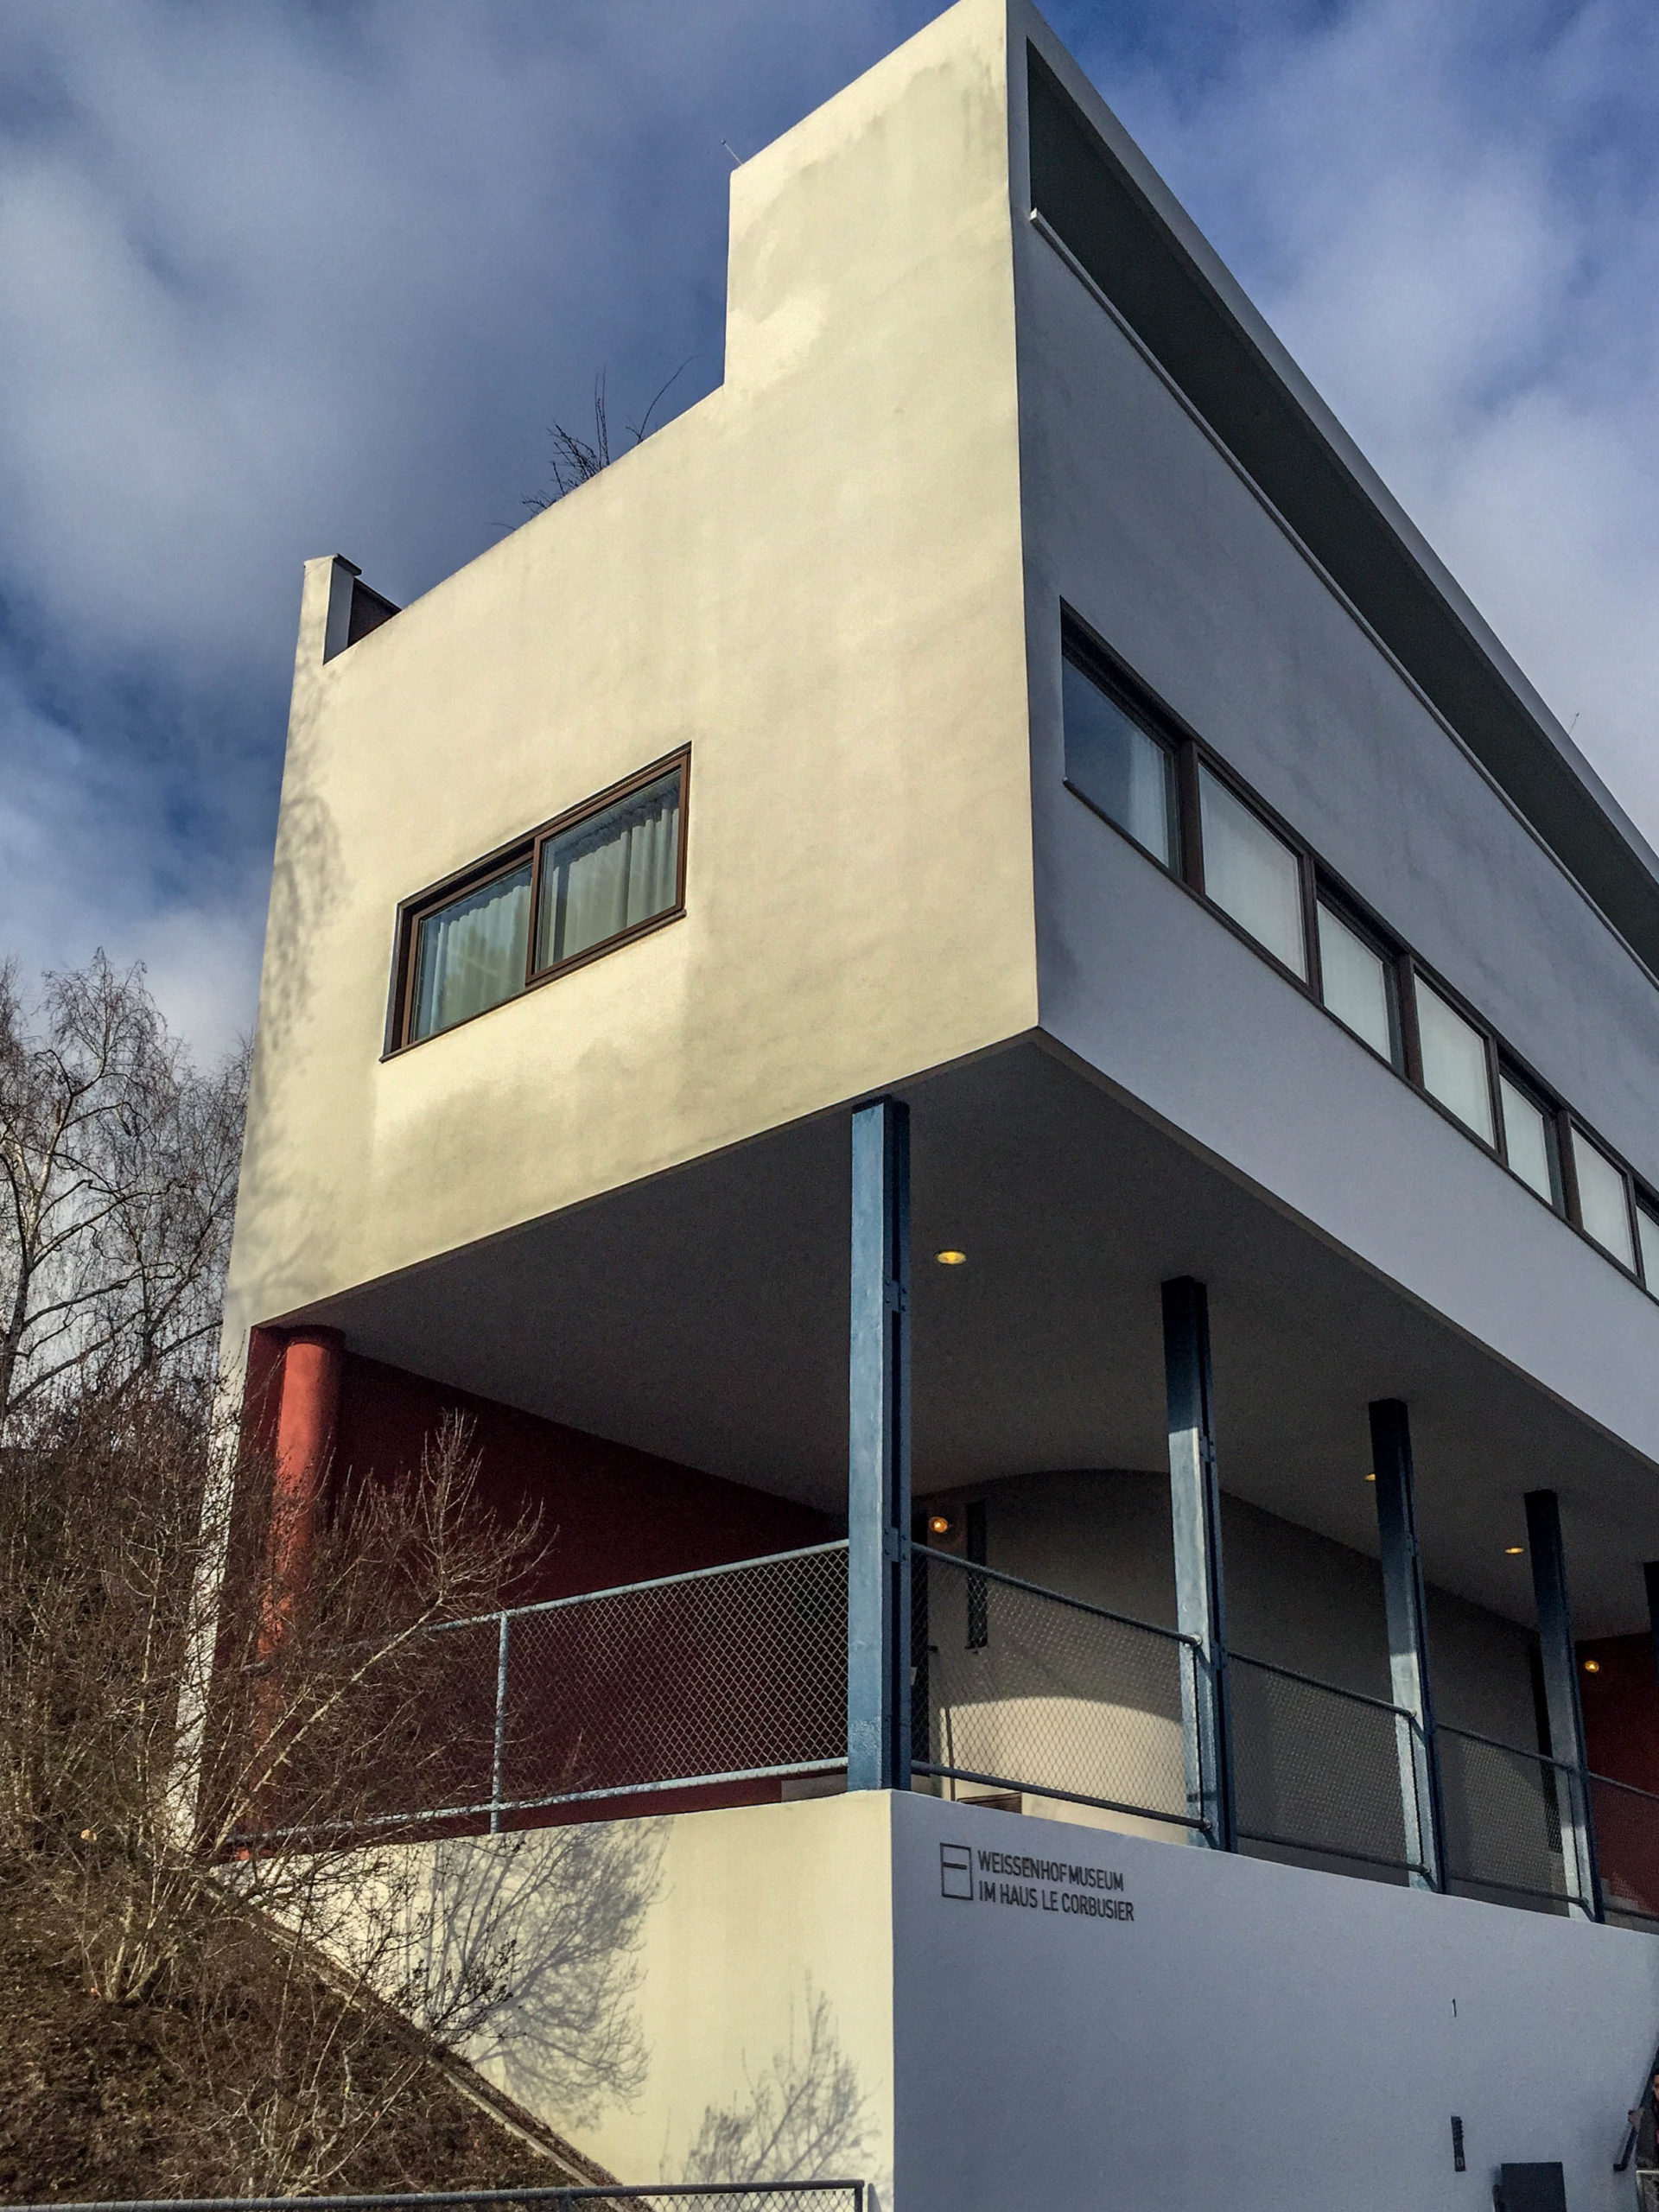 Doppelhaus, 1927. Architekten: Le Corbusier, Pierre Jeanneret